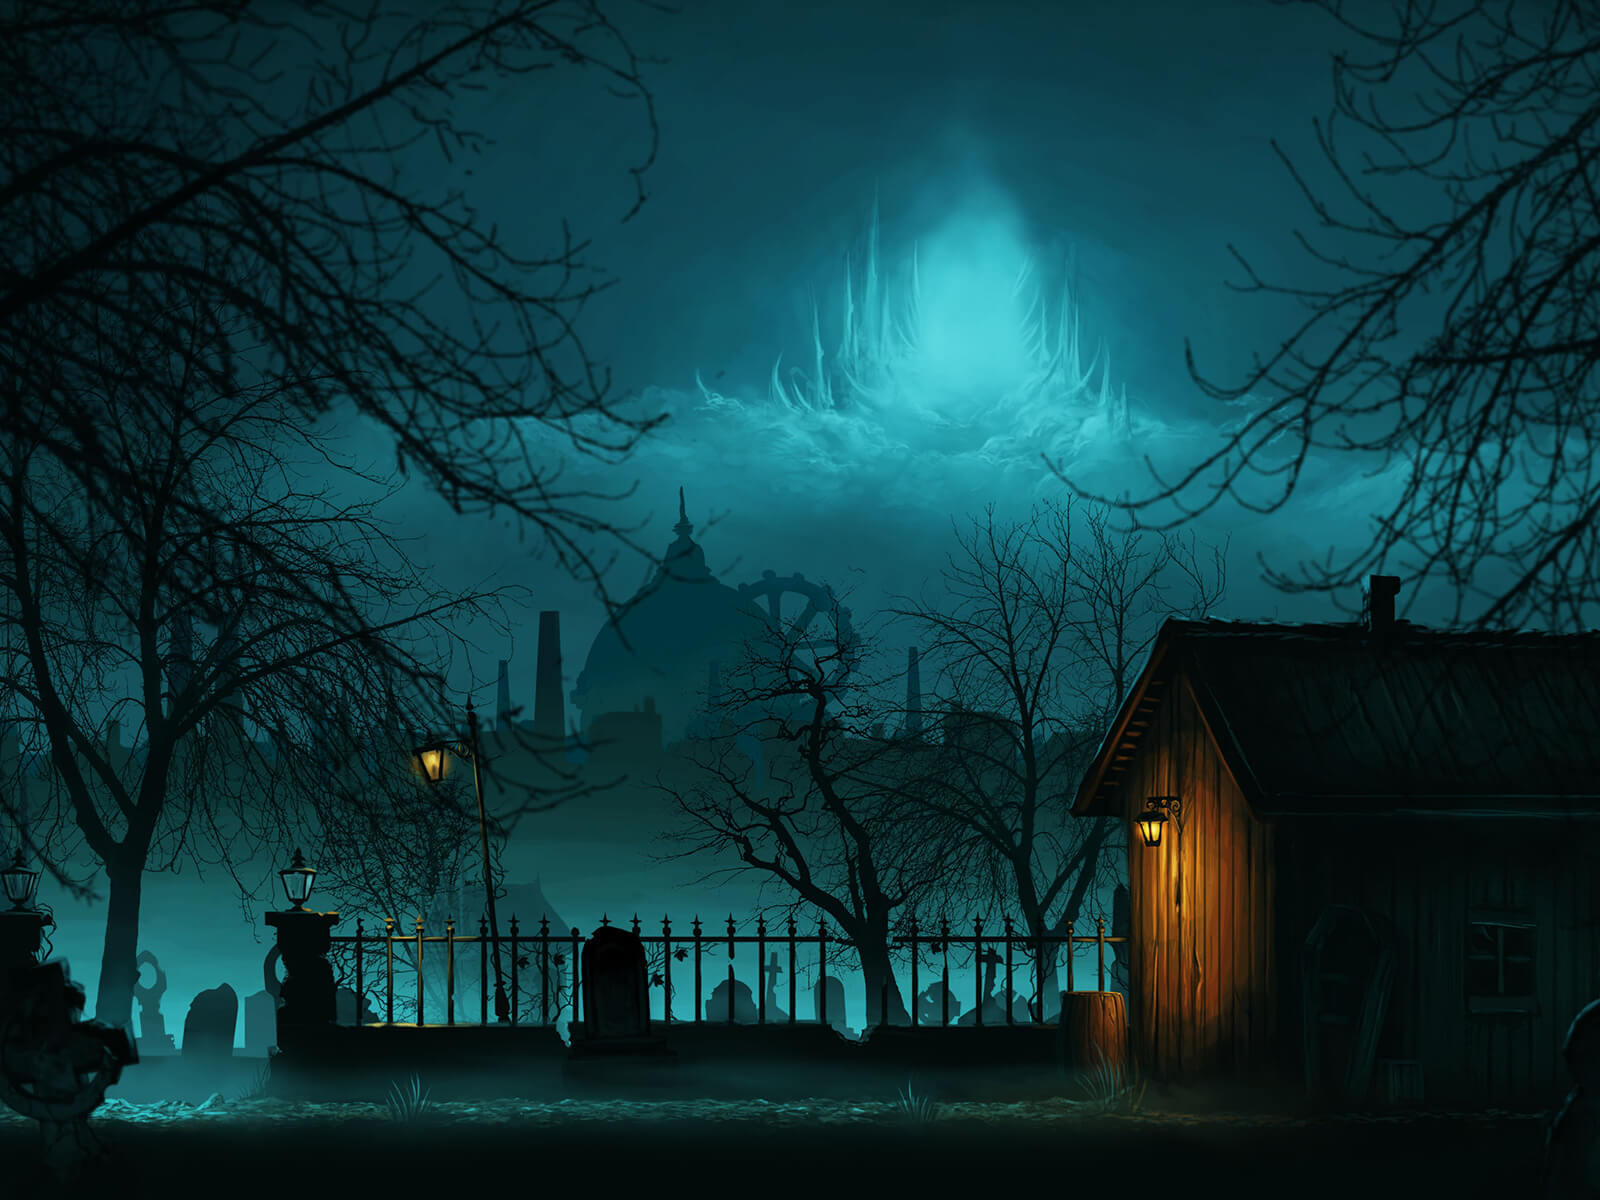 Una choza de madera en un cementerio por la noche. El paisaje urbano y el cielo a lo lejos están iluminados con una luz azul etérea.